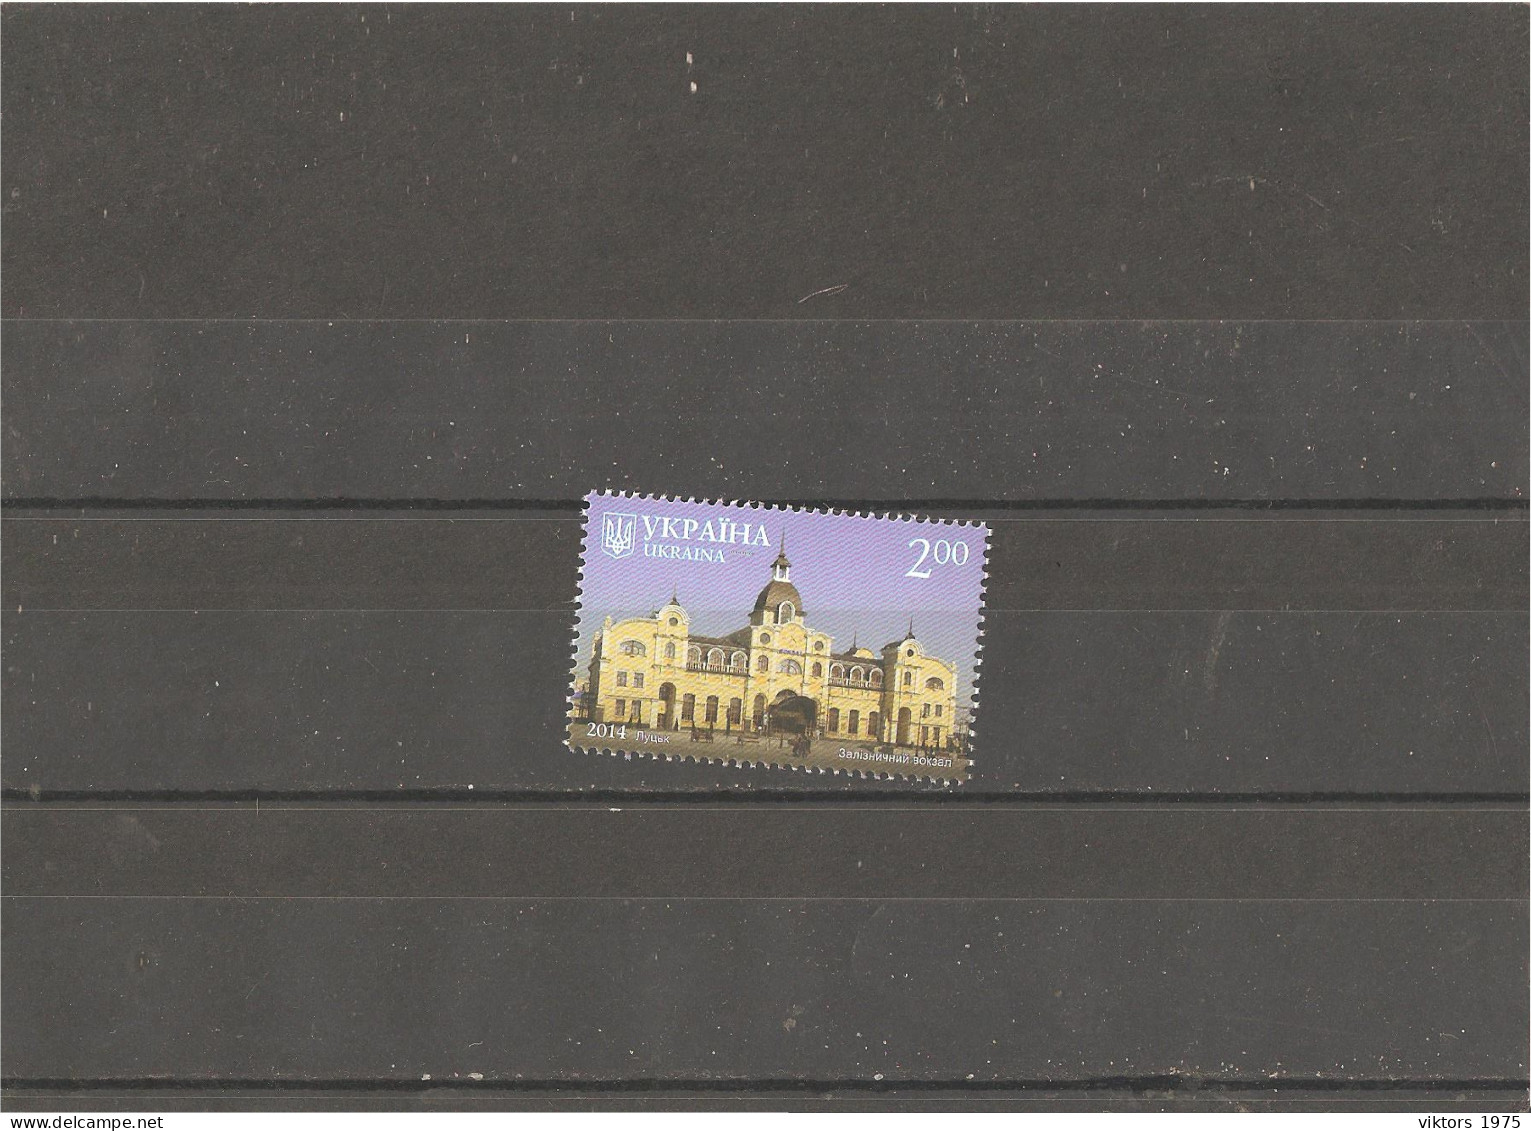 MNH Stamp Nr.1452 In MICHEL Catalog - Ukraine